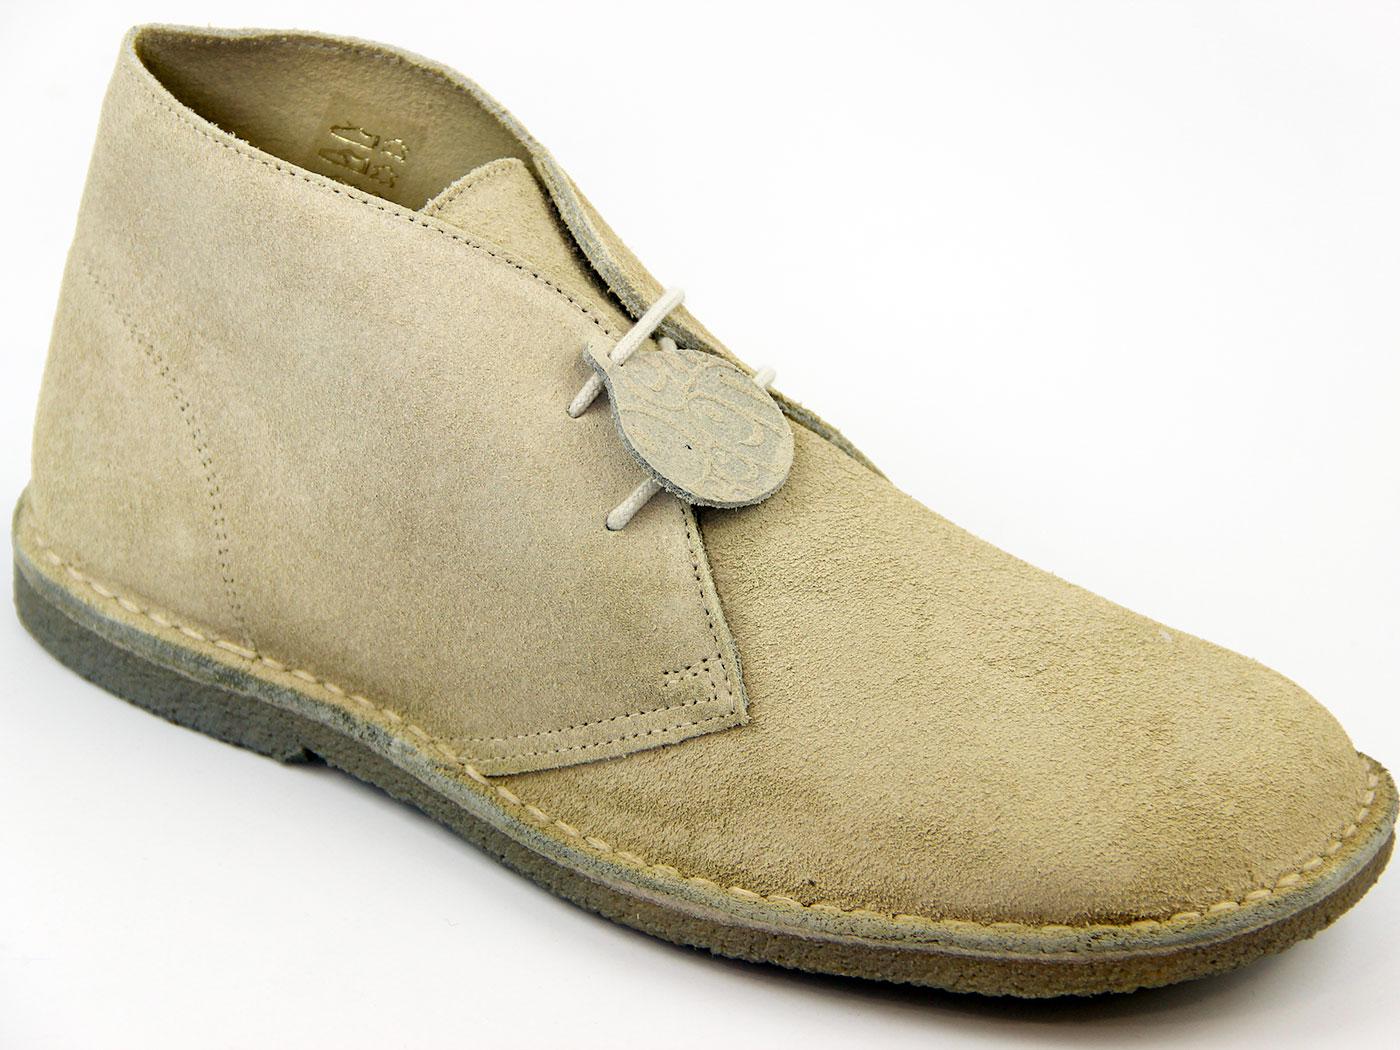 Buy > desert boots crepe sole > in stock